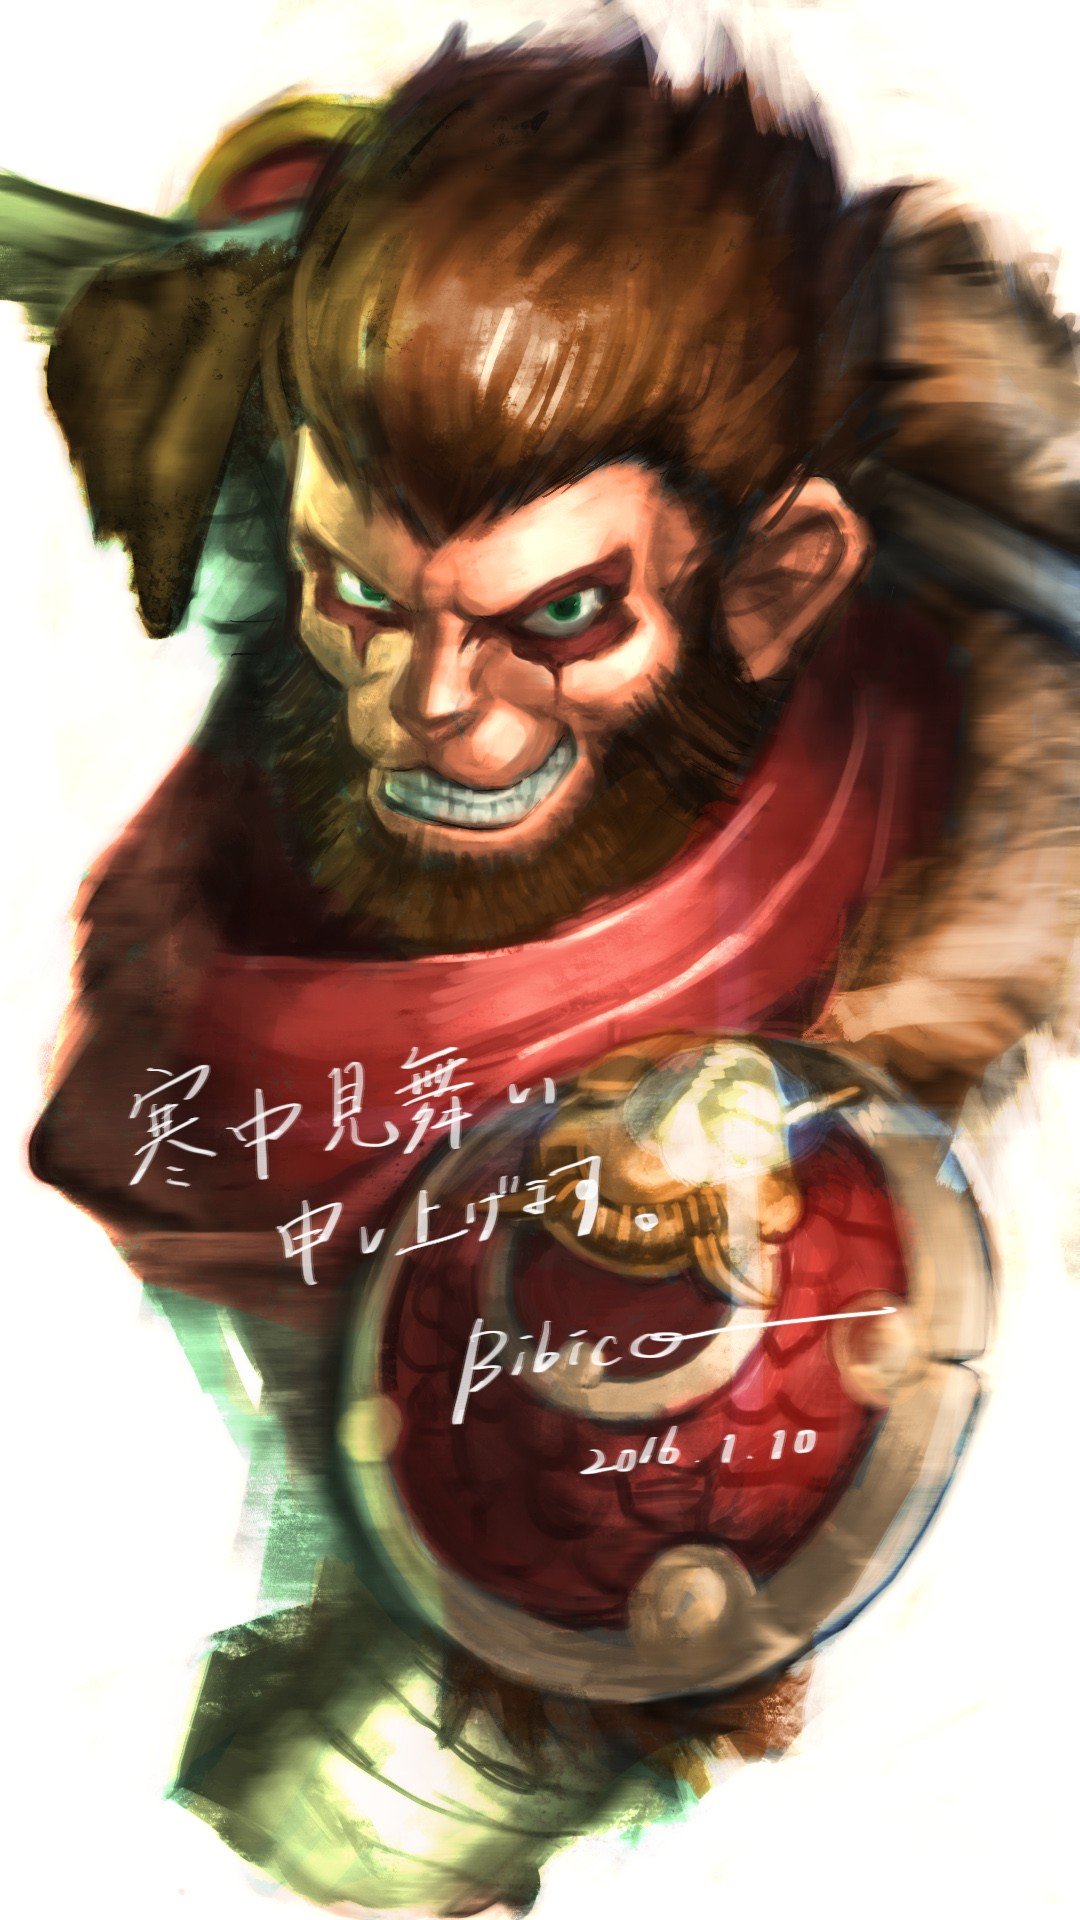 Wukong by bibico HD Wallpaper Fan Art Artwork League of Legends lol